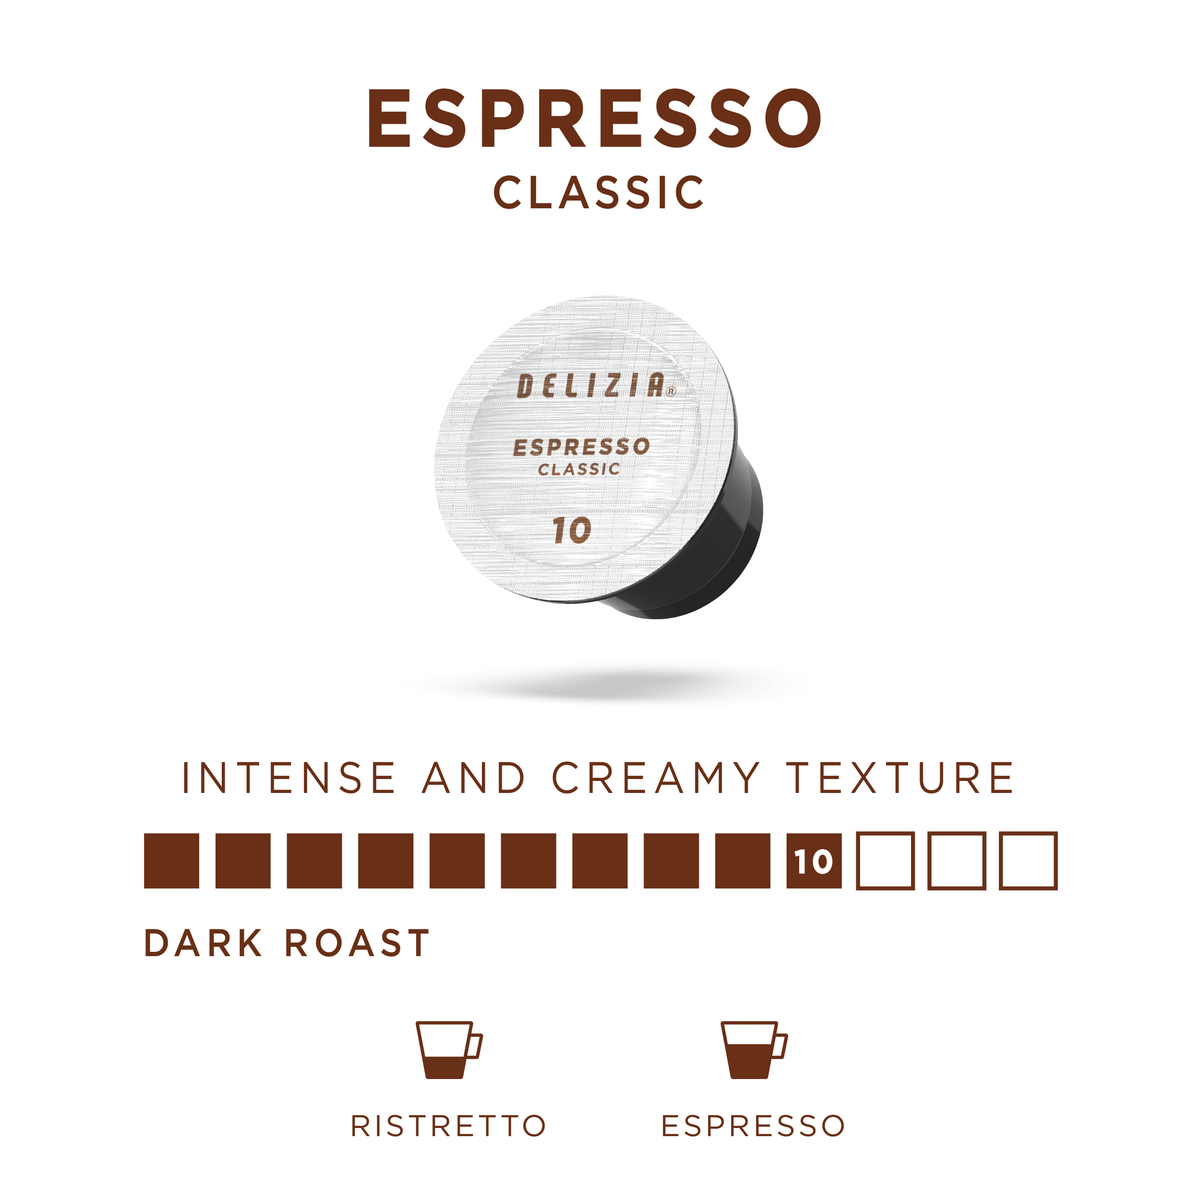 Private Label Pods for Nespresso